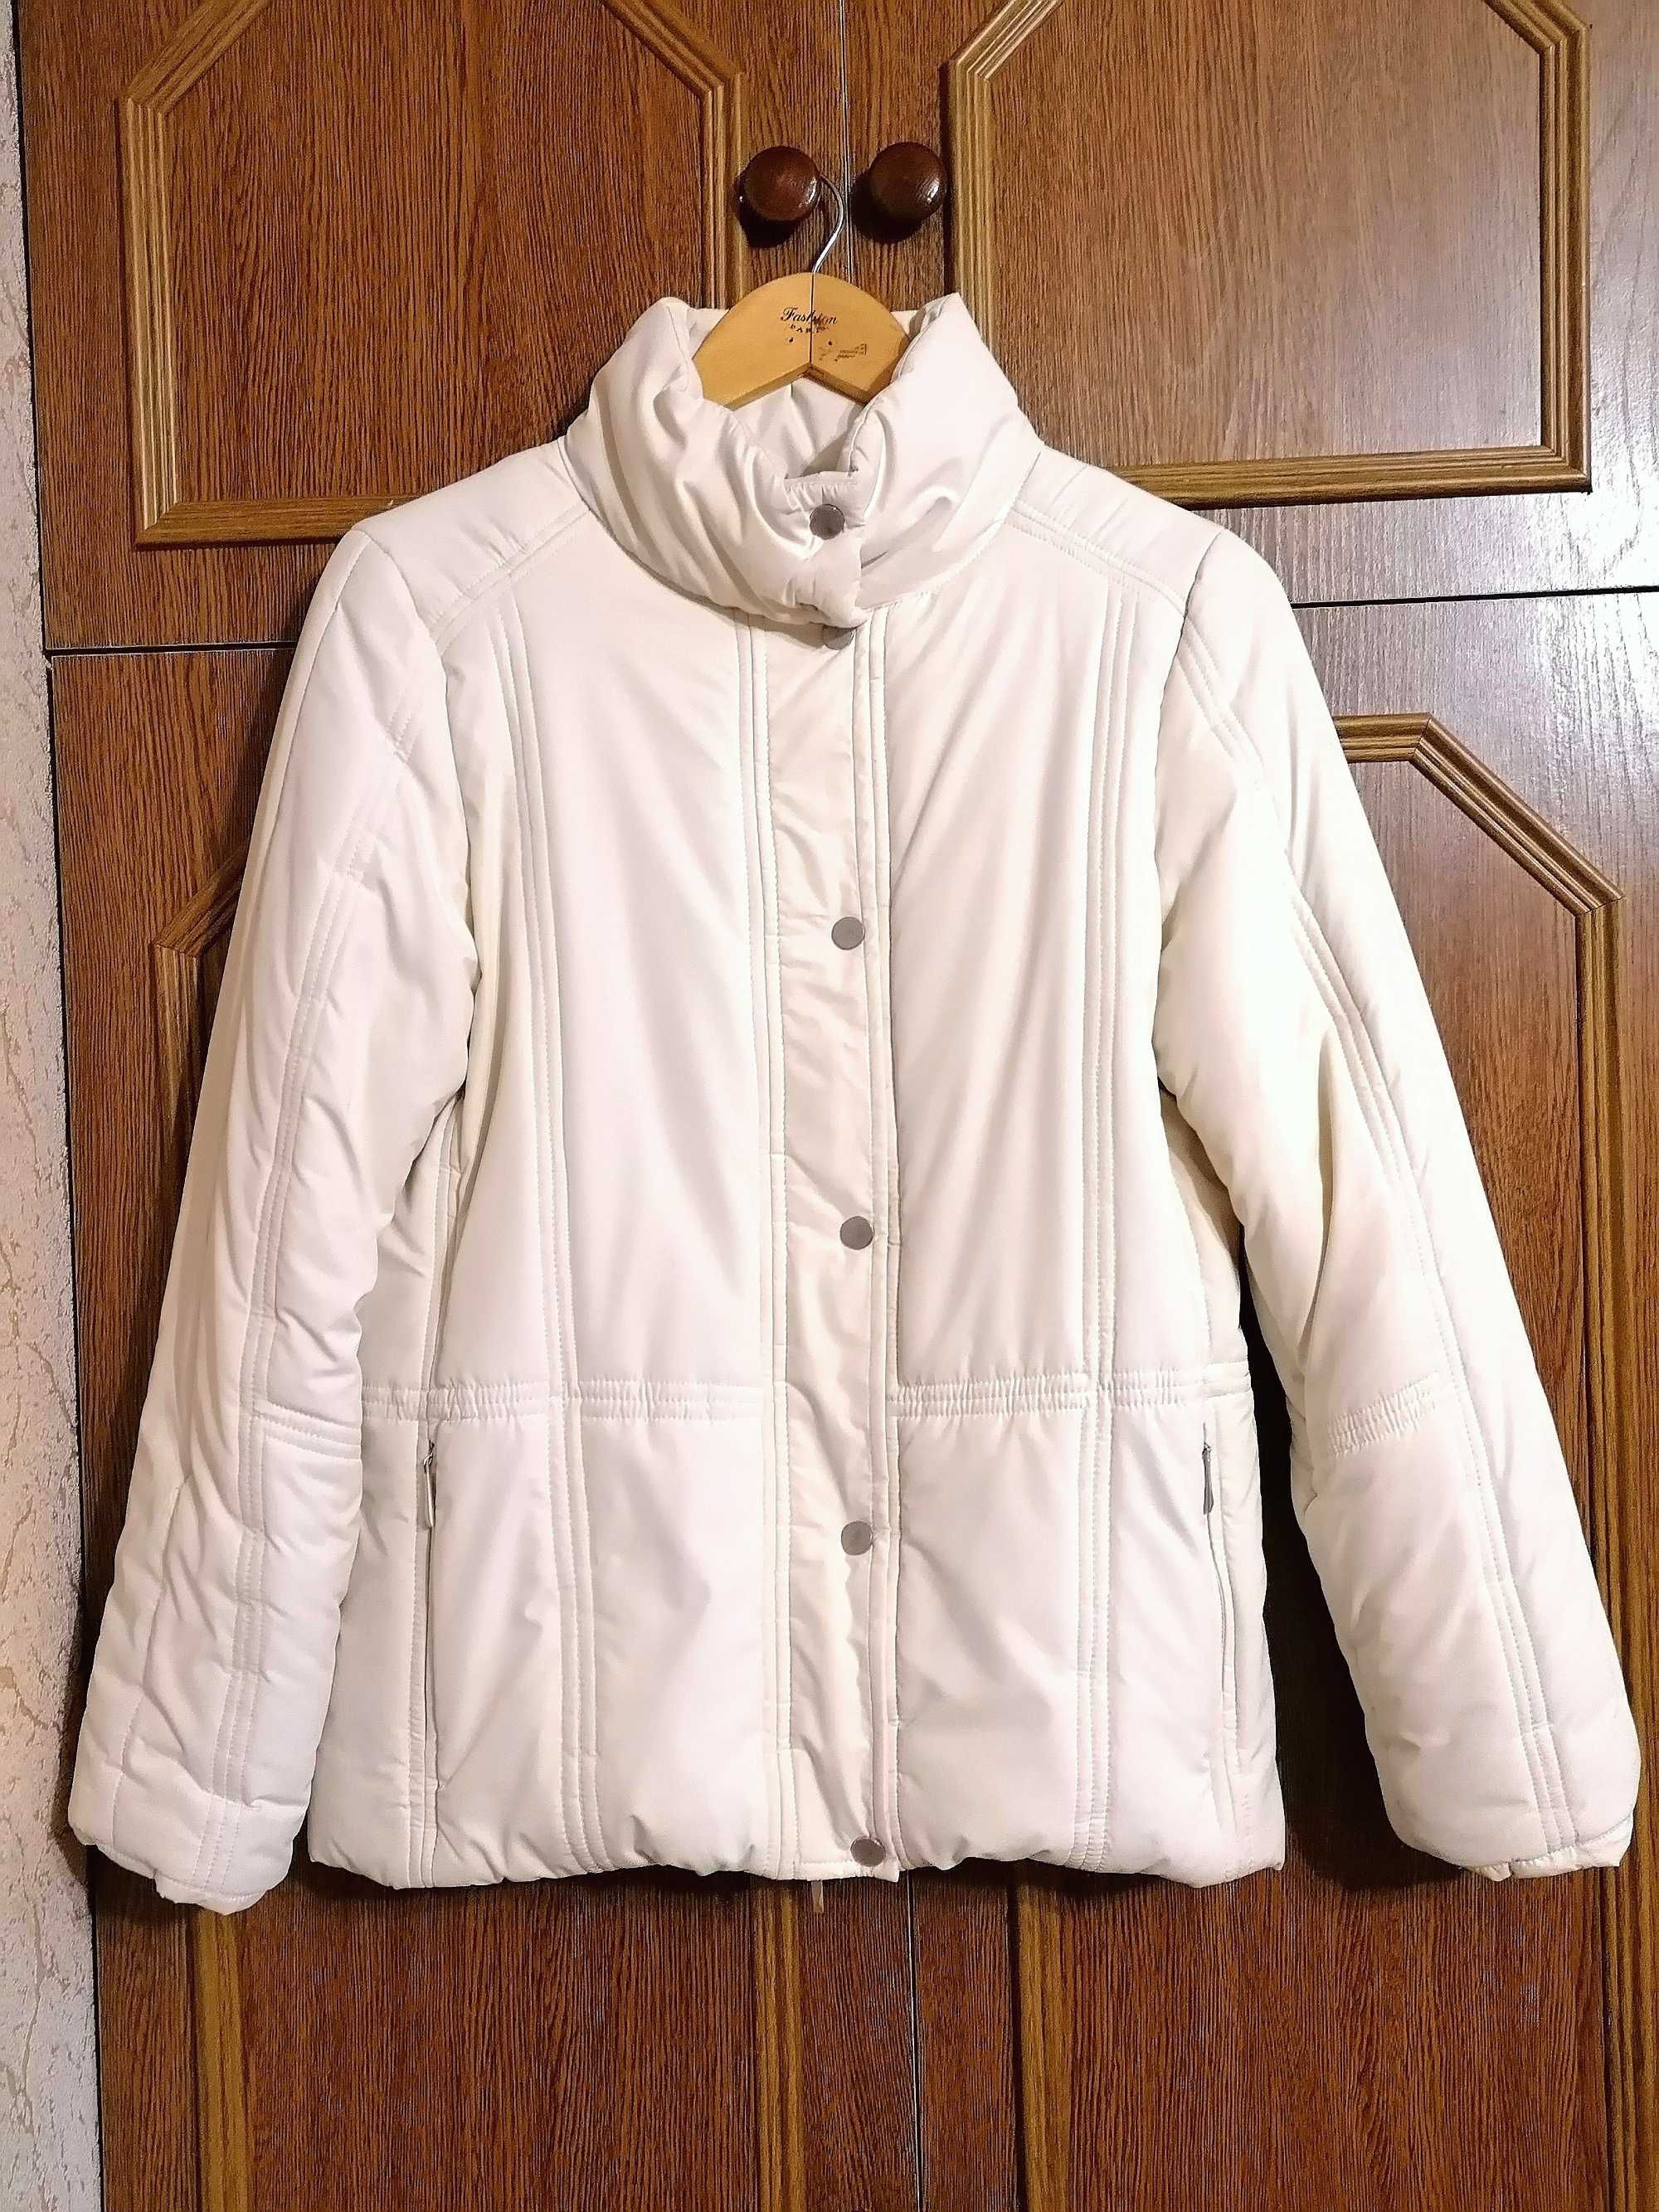 Куртка демисезонная женская размер укр.44